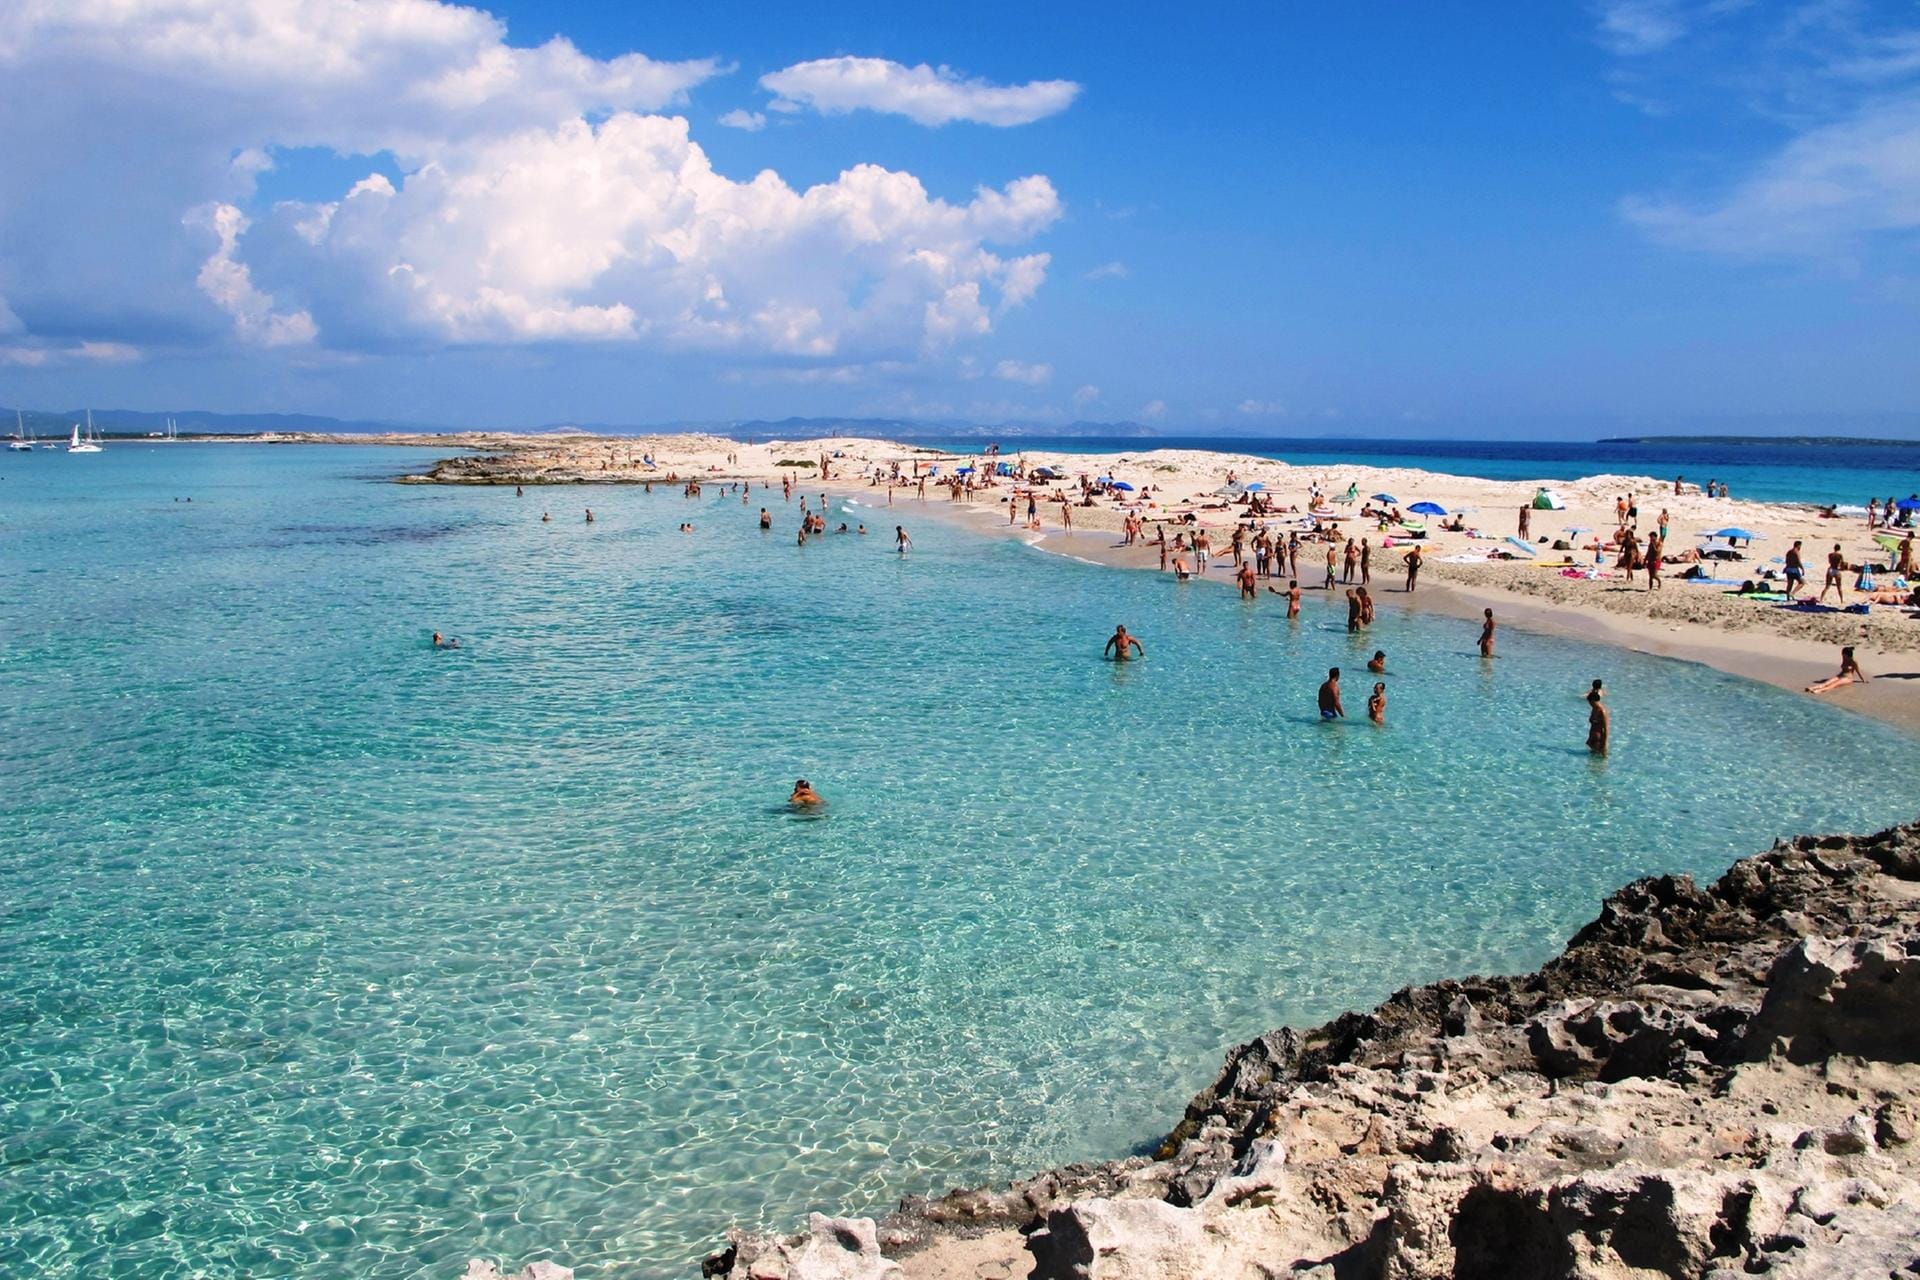 Die Tripadvisor-Nutzer kürten den Playa de ses Illetes auf Formentera zum besten Strand Europas. Mehr als 2000 Bewertungen gibt es für ihn.